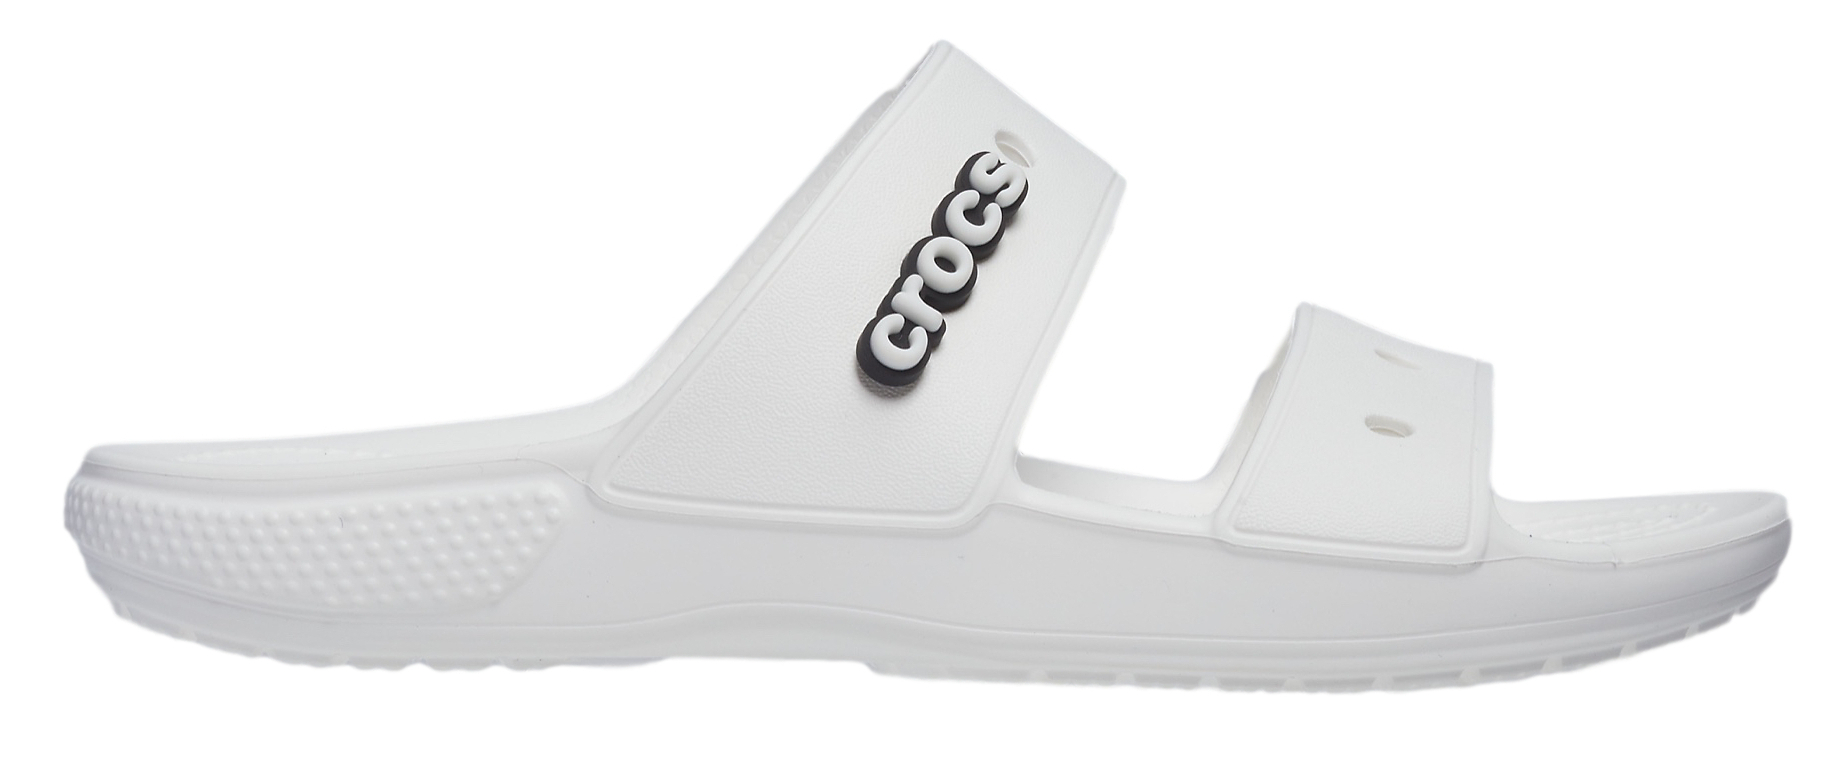 Crocs Dámské pantofle Classic Crocs Sandal 206761-100 39-40